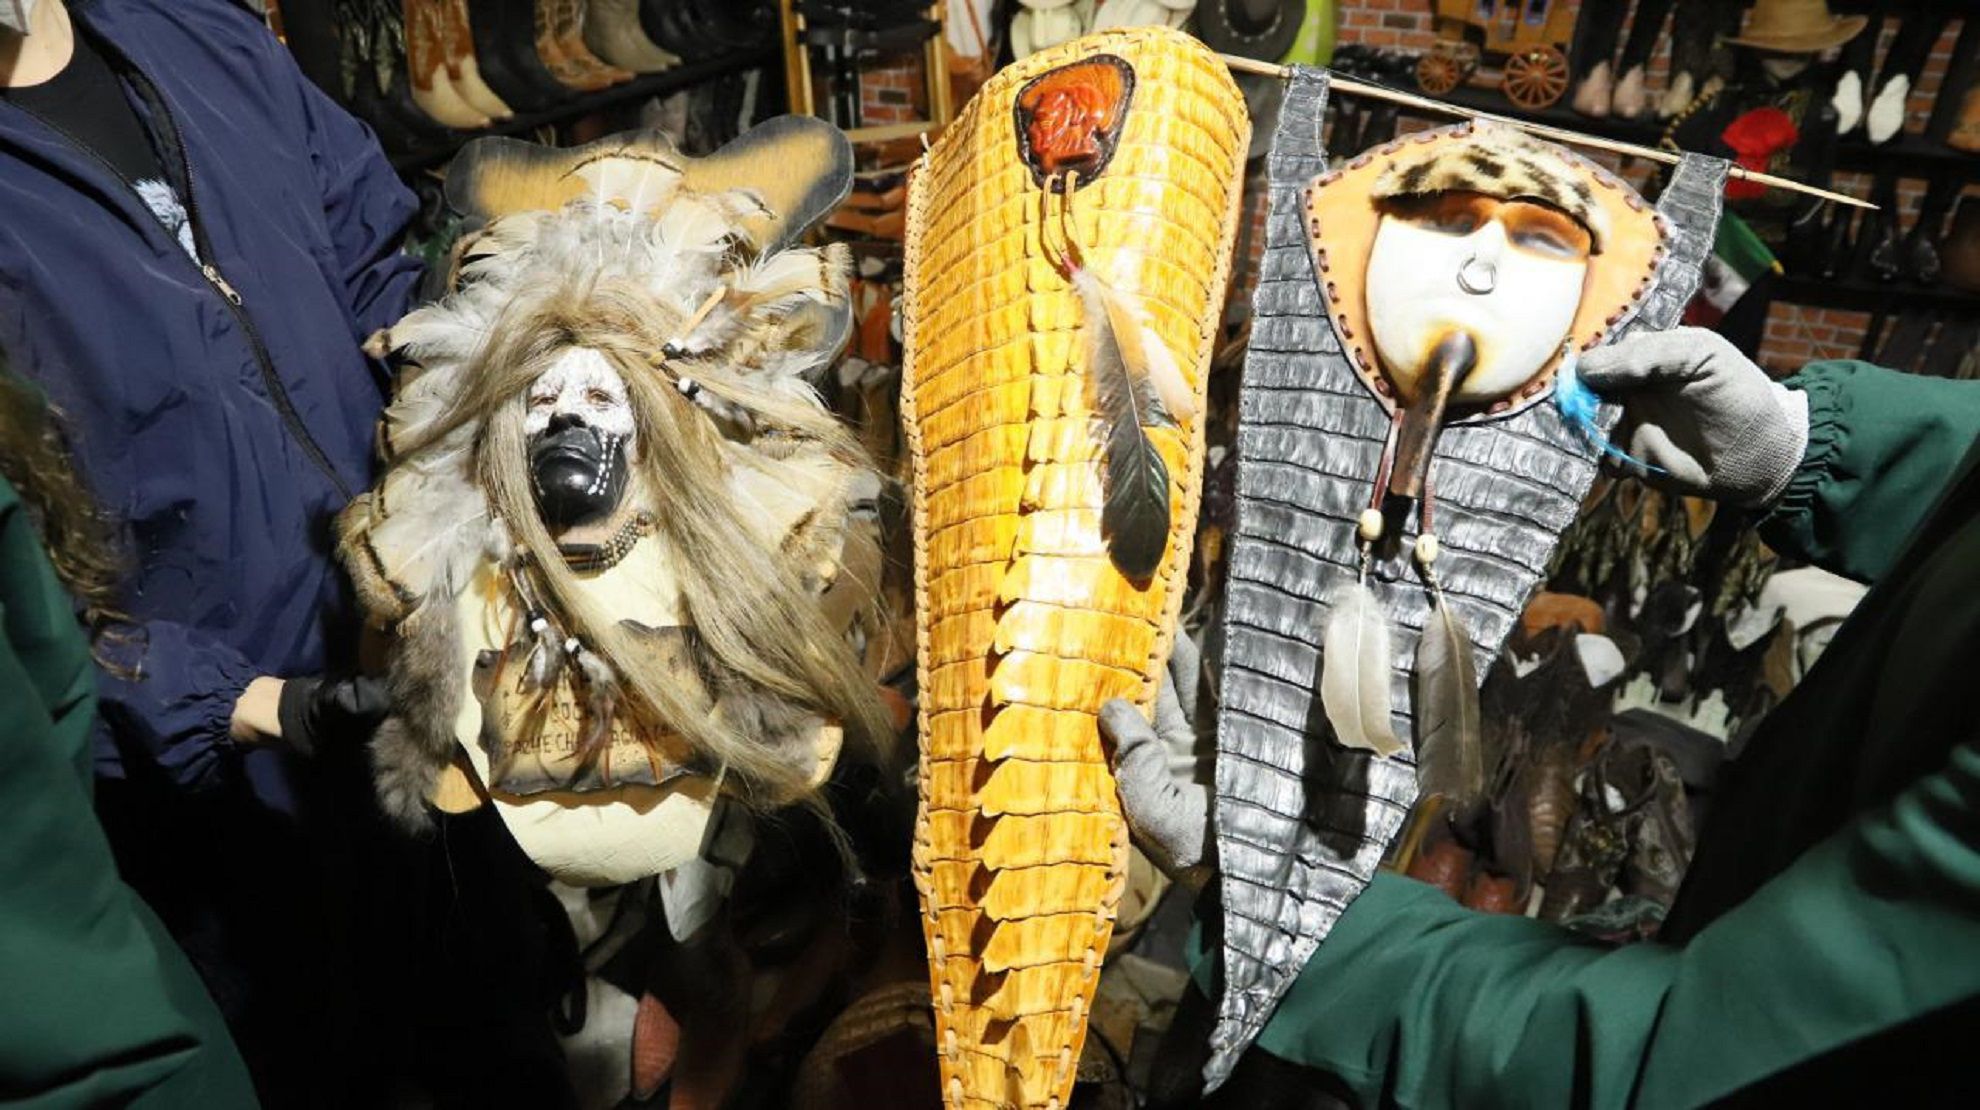 Artículos hechos con animales silvestres Bogotá 16-10-2020